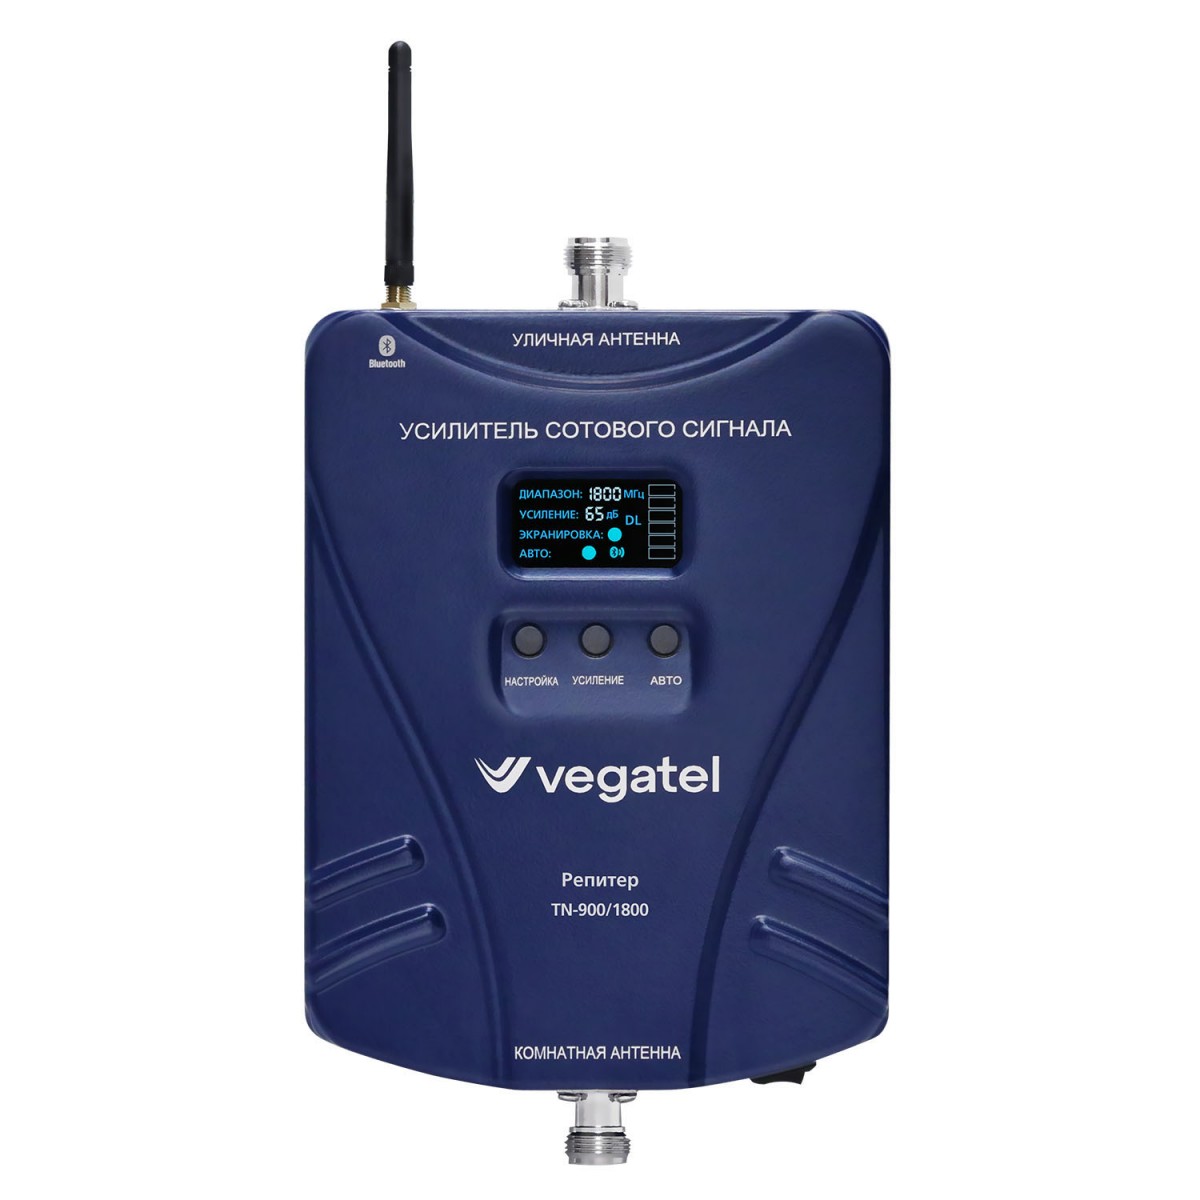 Детальное изображение товара "Комплект усиления сотовой связи Vegatel TN-900/1800" из каталога оборудования Антенна76